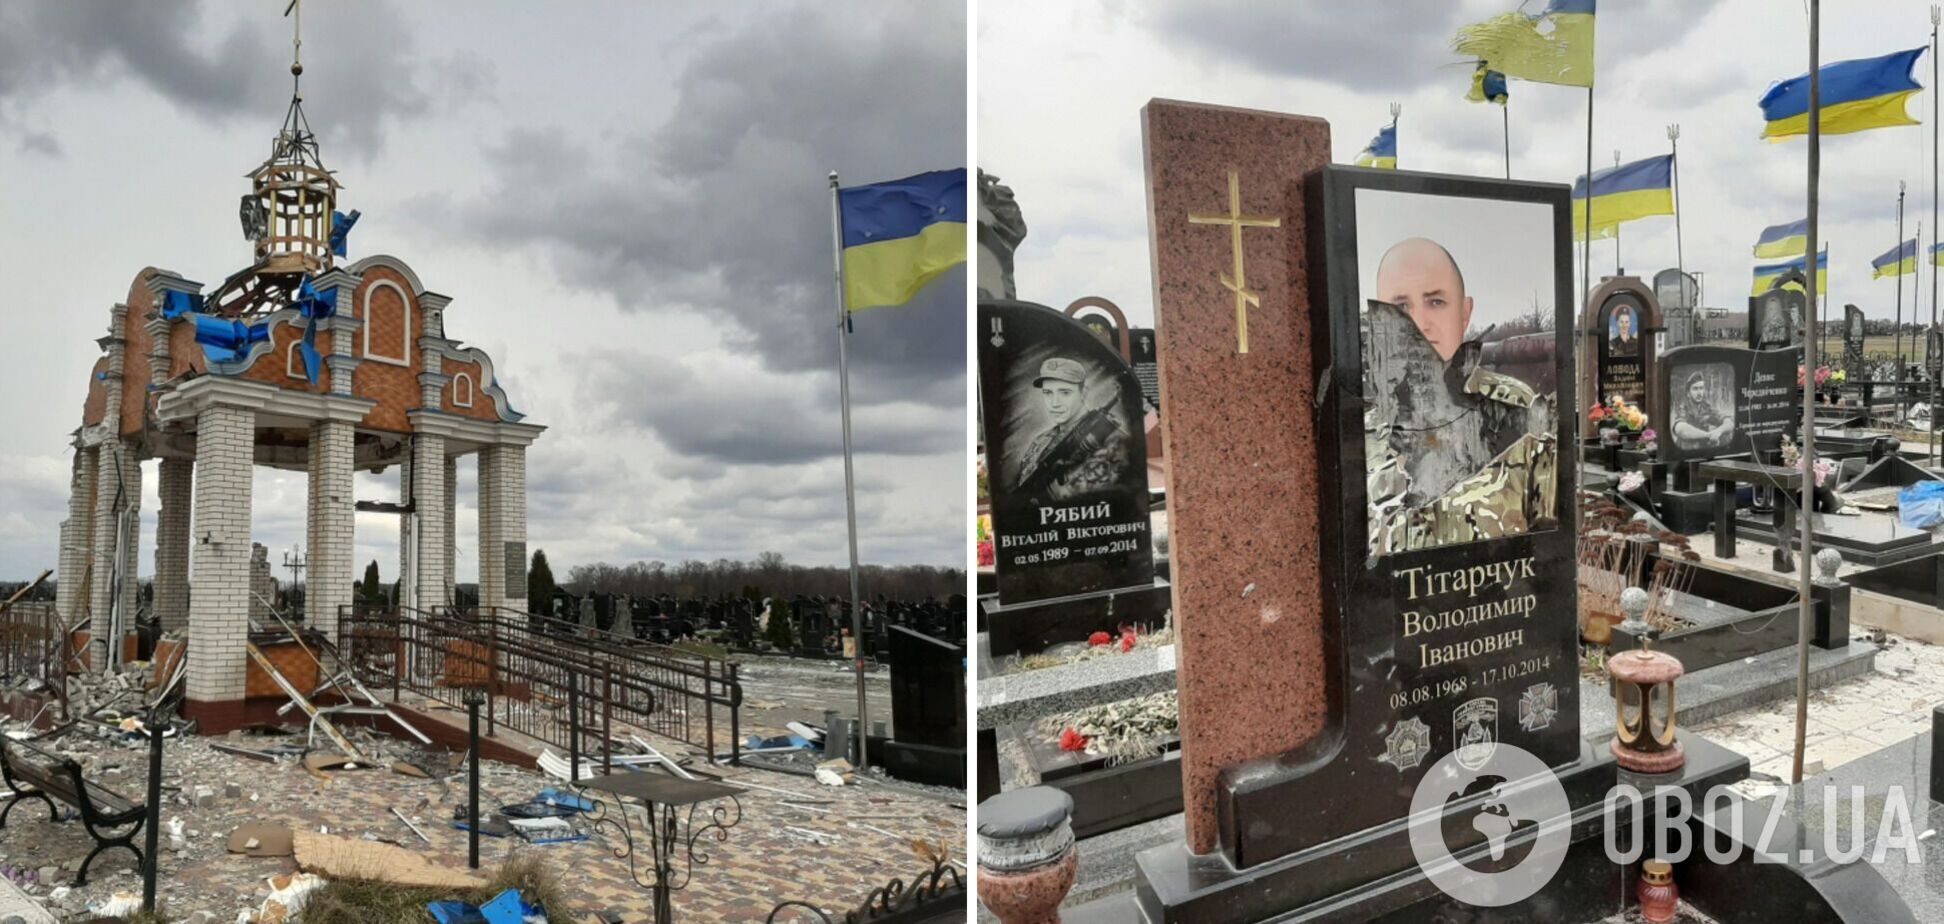 'Убивали живых и мертвых': в Чернигове оккупанты разрушили Аллею Героев с могилами украинских воинов. Фото